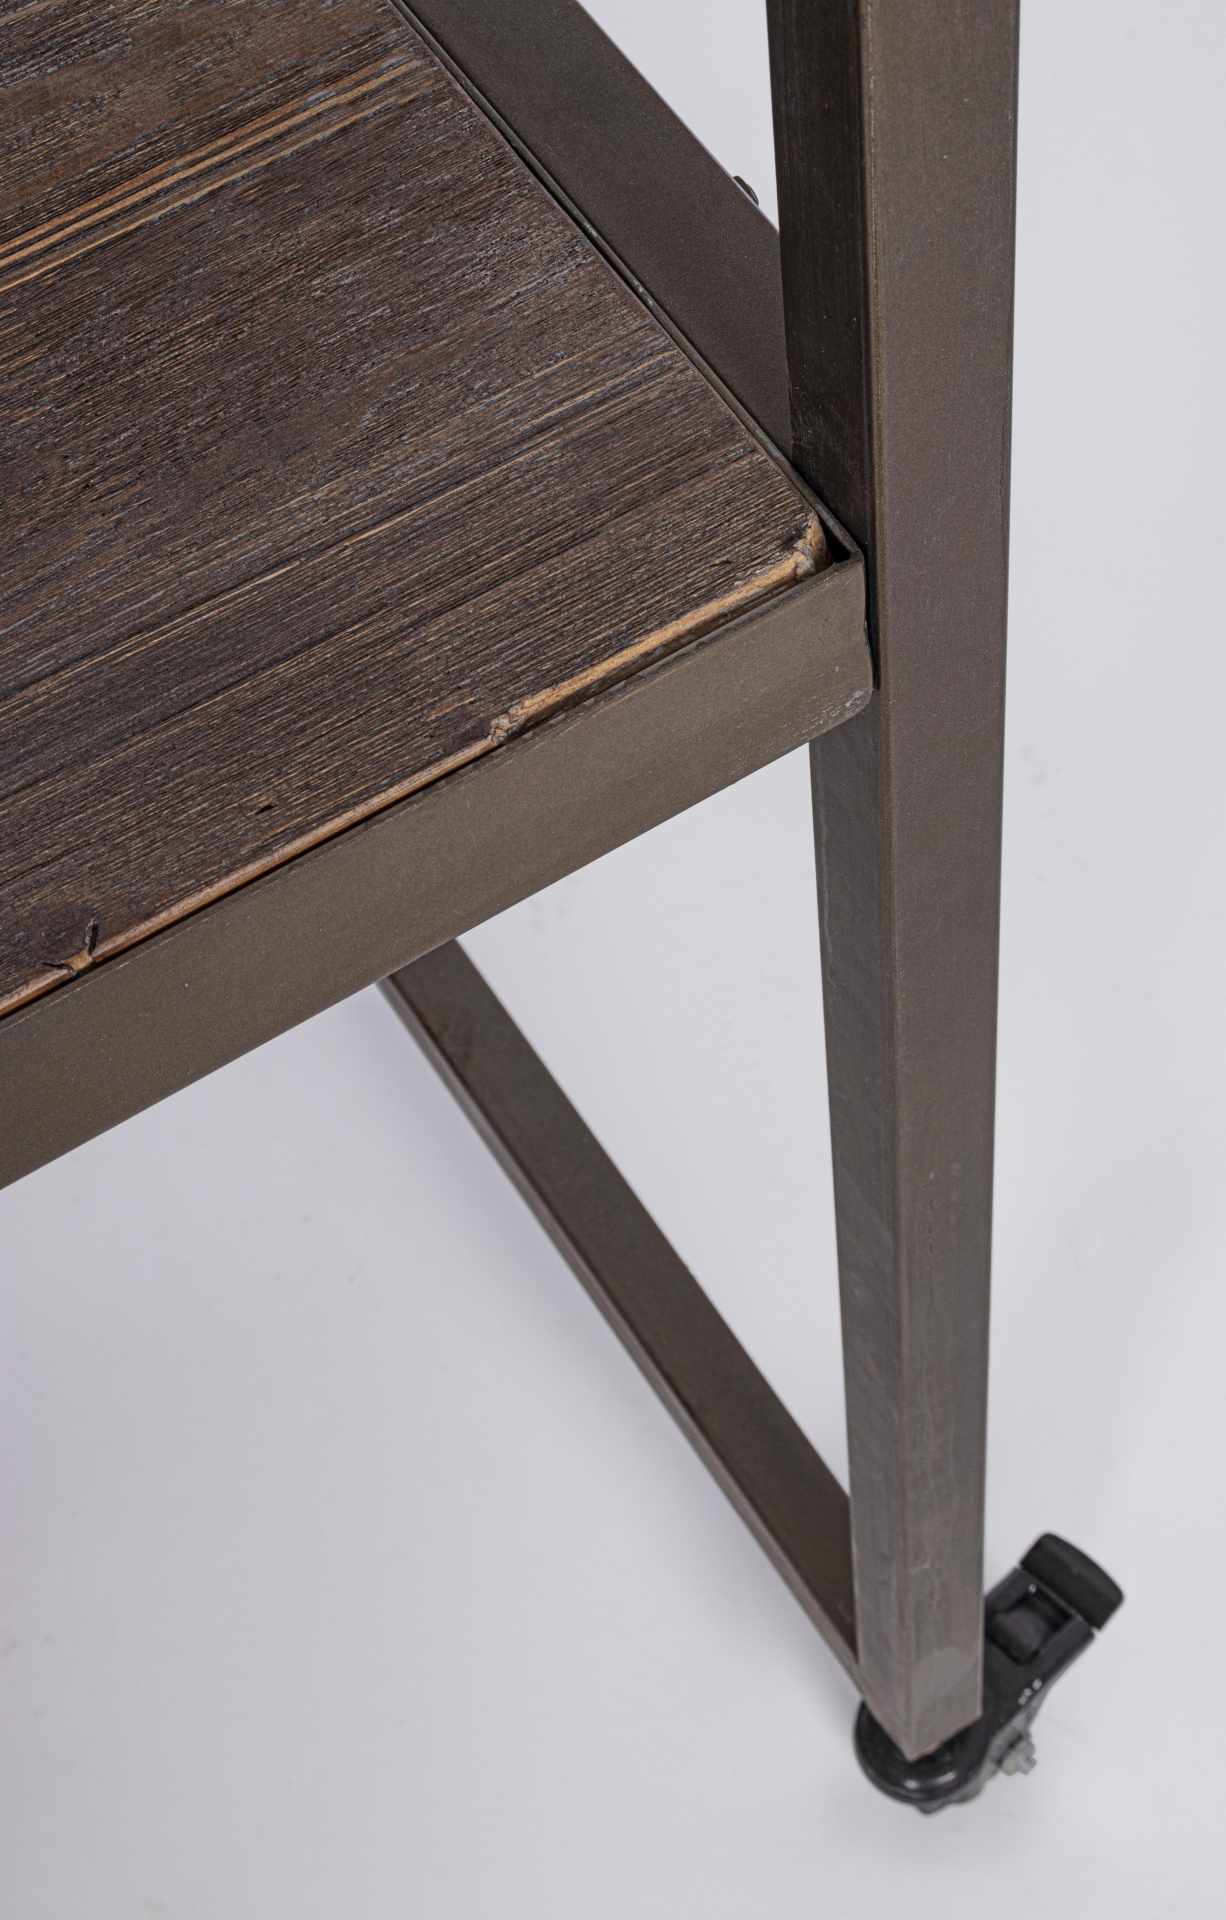 Der Esstisch überzeugt mit seinem klassischem Design. Gefertigt wurde er aus Tannenholz, welches einen natürlichen Farbton besitzt. Das Gestell ist aus Metall, welches eine Bronze Farbe hat. Der Tisch besitzt eine Breite von 180 cm.